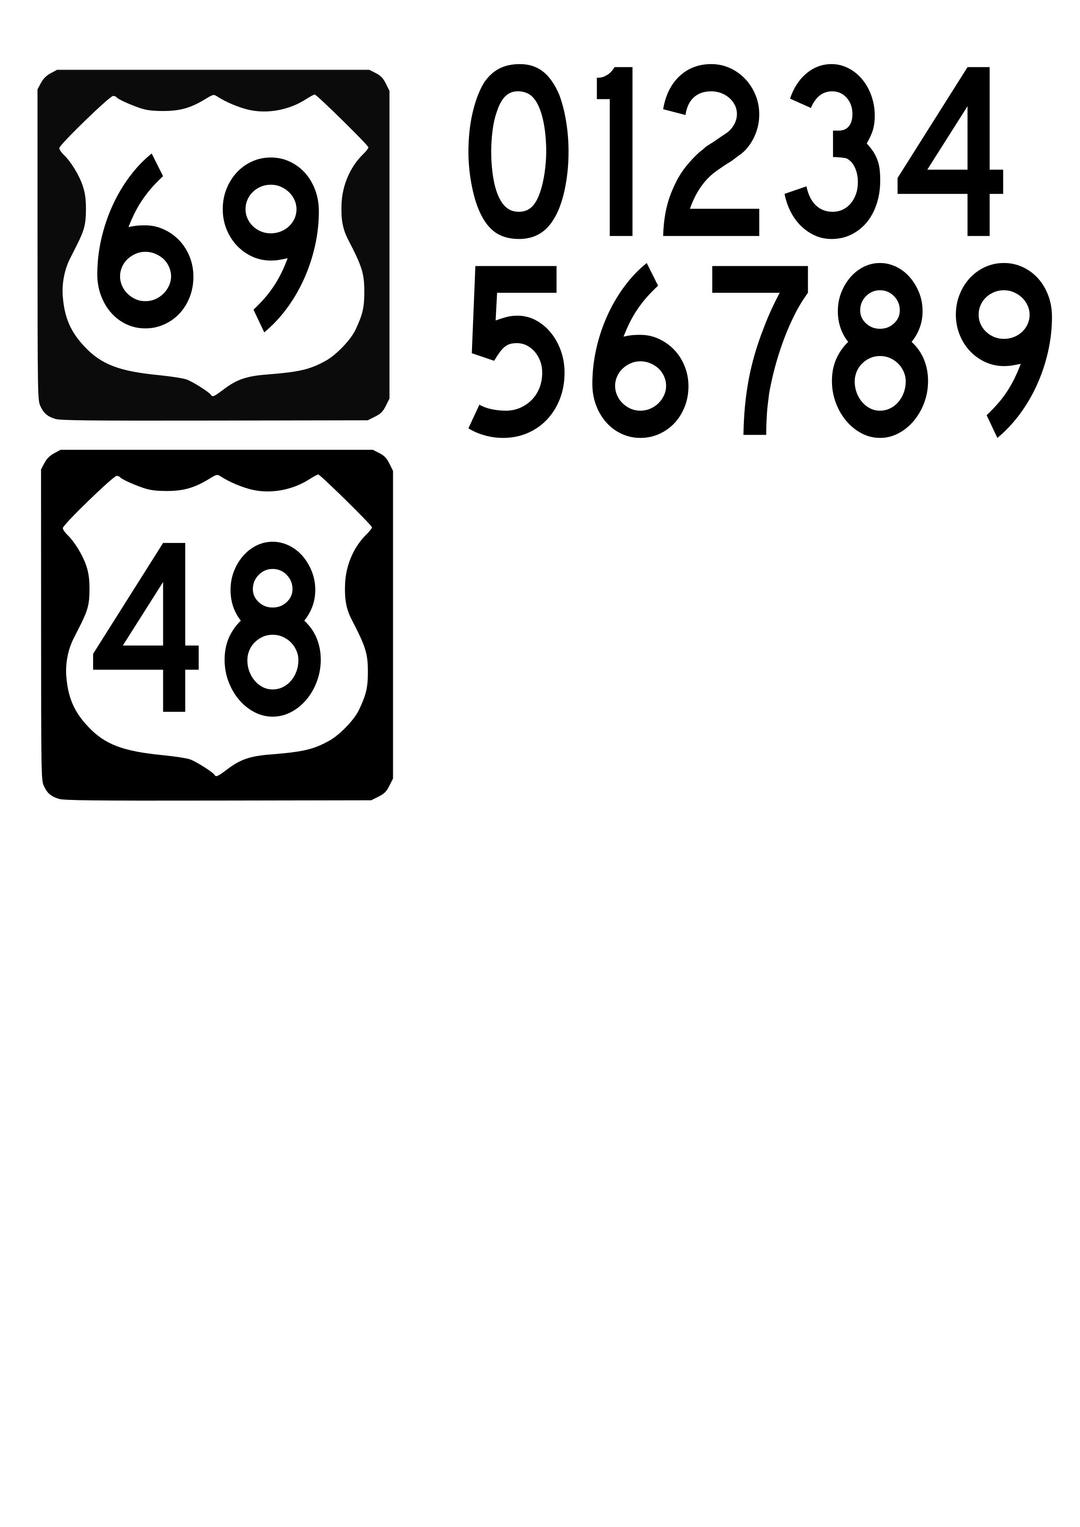 US Highway sign png transparent